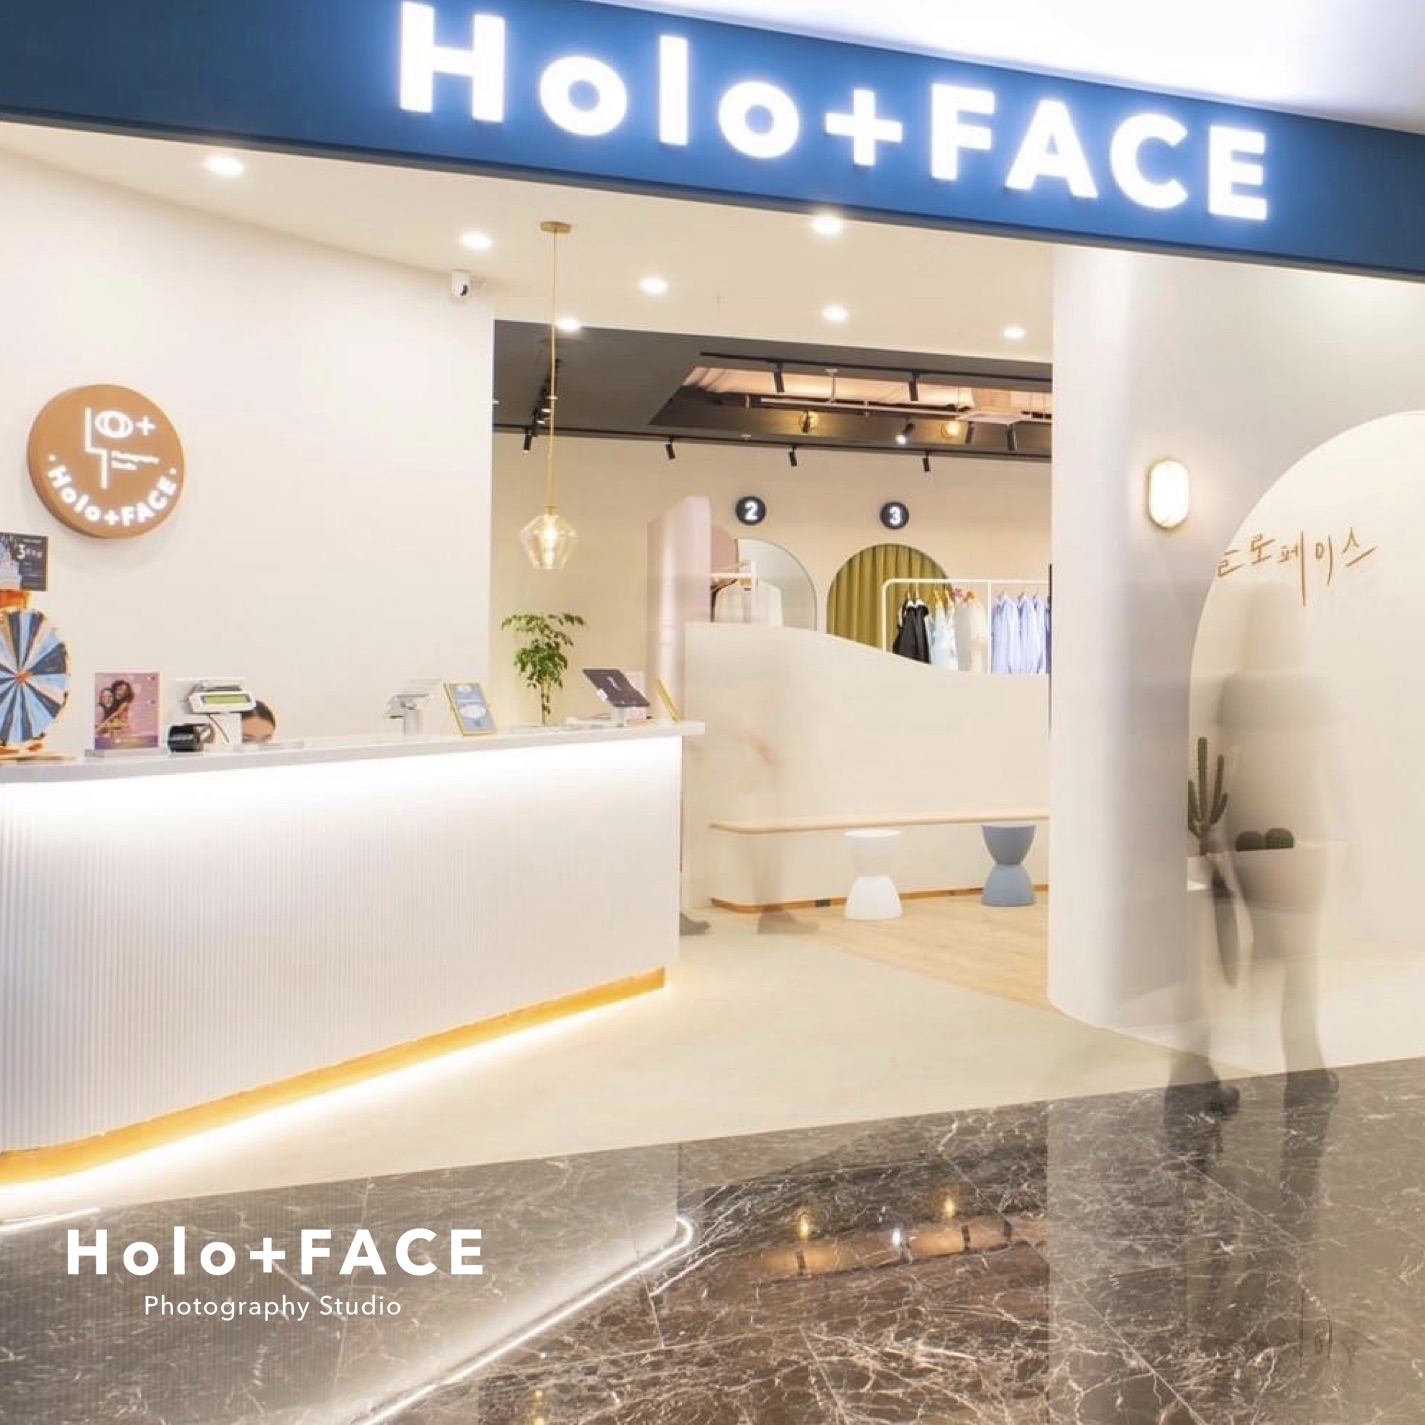 Holo+FACE 韓式證件照/大頭照/求職照/形象照/空服應試照